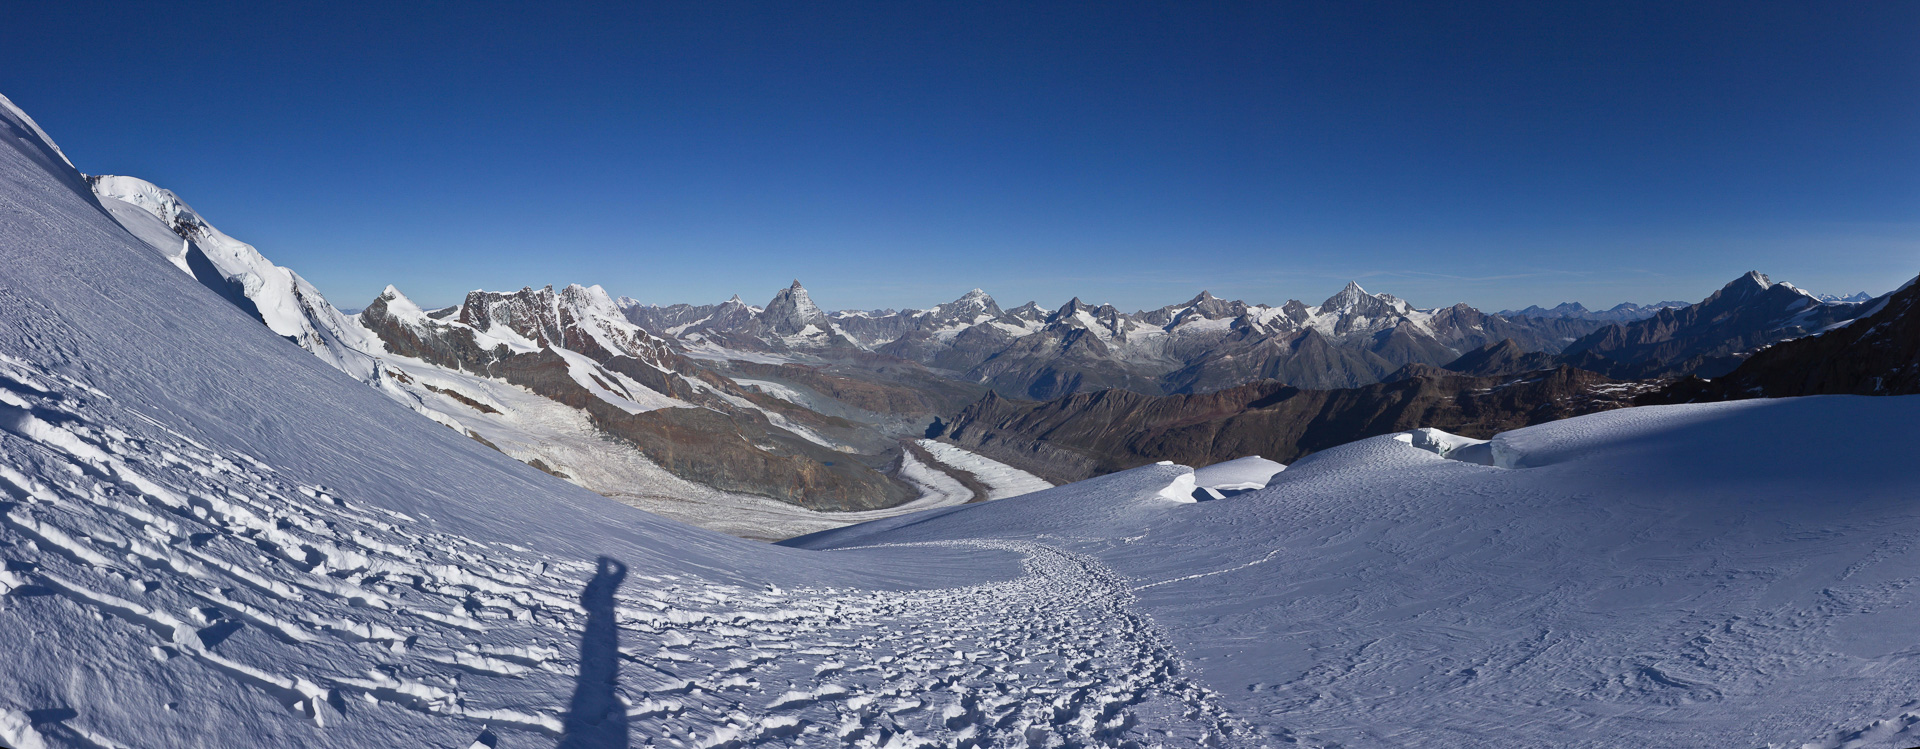 Die Zermatter Berge - und zu Füßen der gewaltige Grenzgletscher, der in den Gornergletscher übergeht.